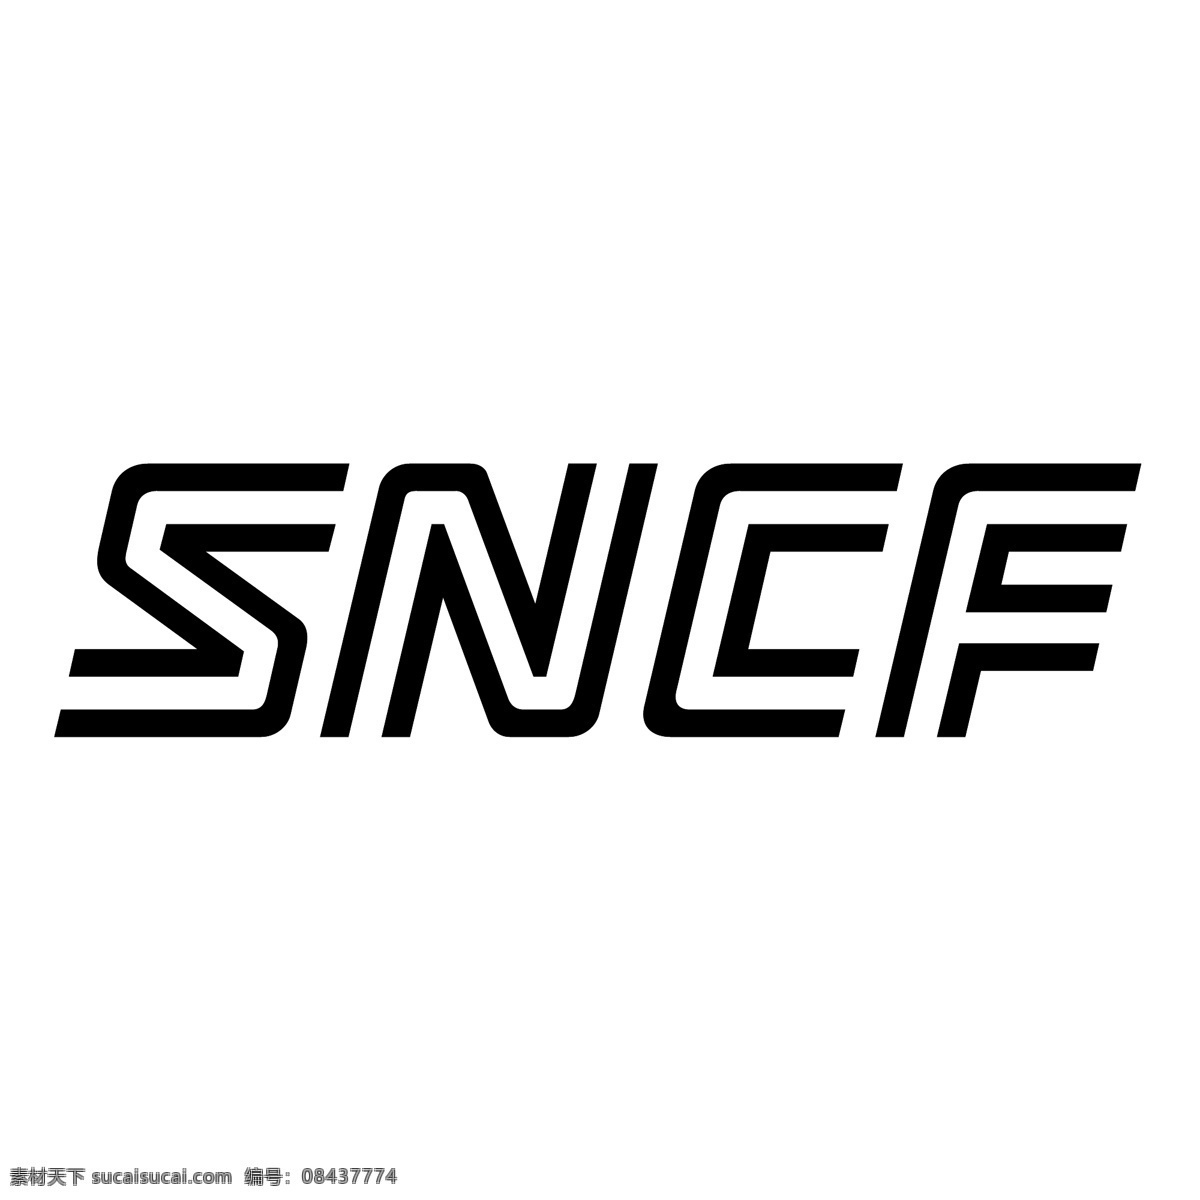 法国 国营 铁路 公司 sncf 矢量标志 标志 eps标志 向量 蓝色